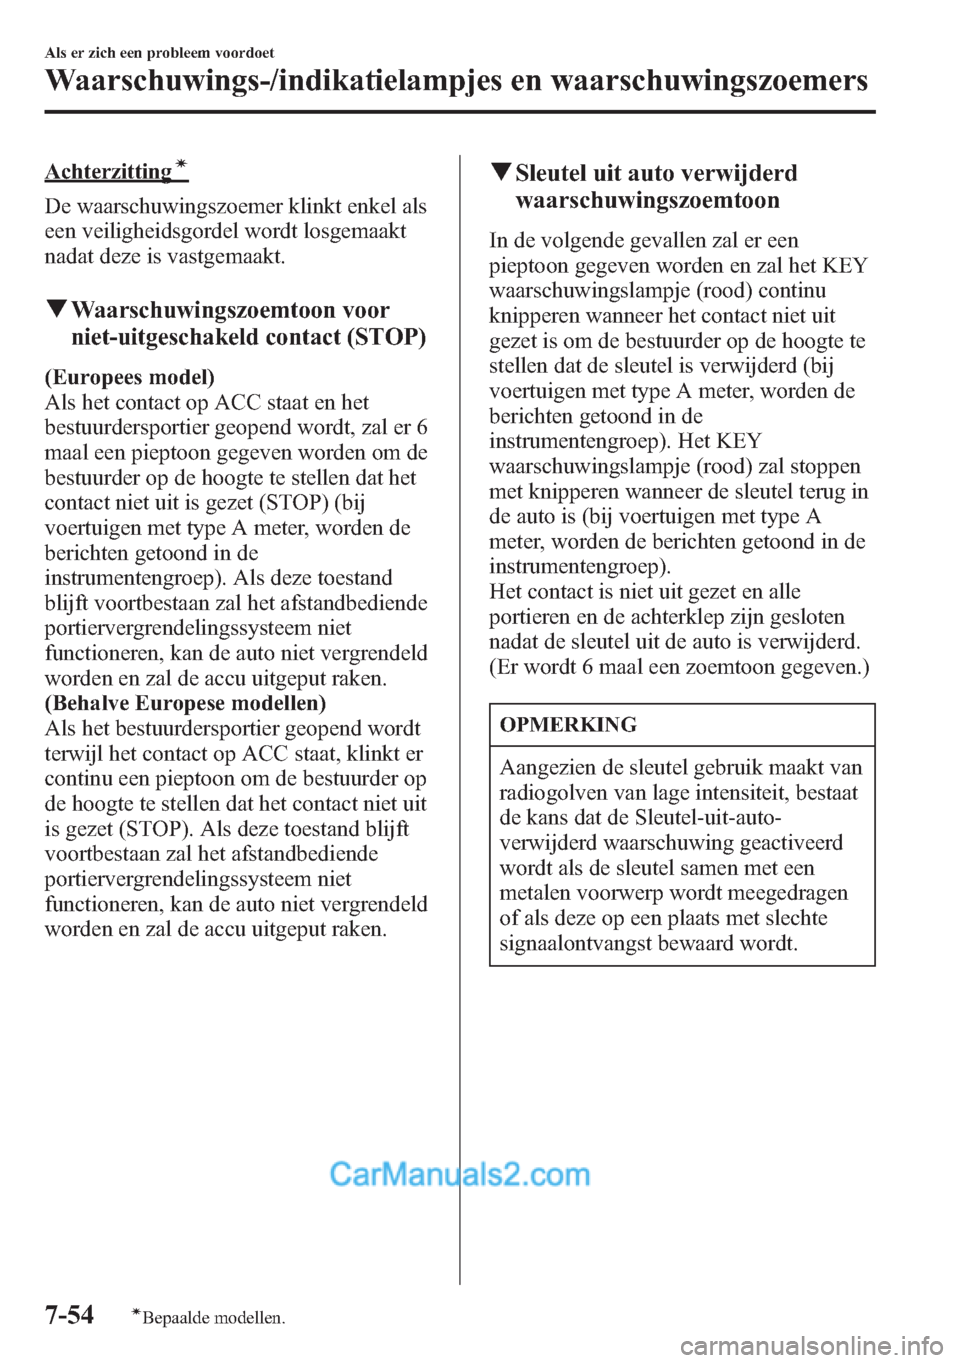 MAZDA MODEL CX-5 2015  Handleiding (in Dutch) Achterzittingí
De waarschuwingszoemer klinkt enkel als
een veiligheidsgordel wordt losgemaakt
nadat deze is vastgemaakt.
qWaarschuwingszoemtoon voor
niet-uitgeschakeld contact (STOP)
(Europees model)